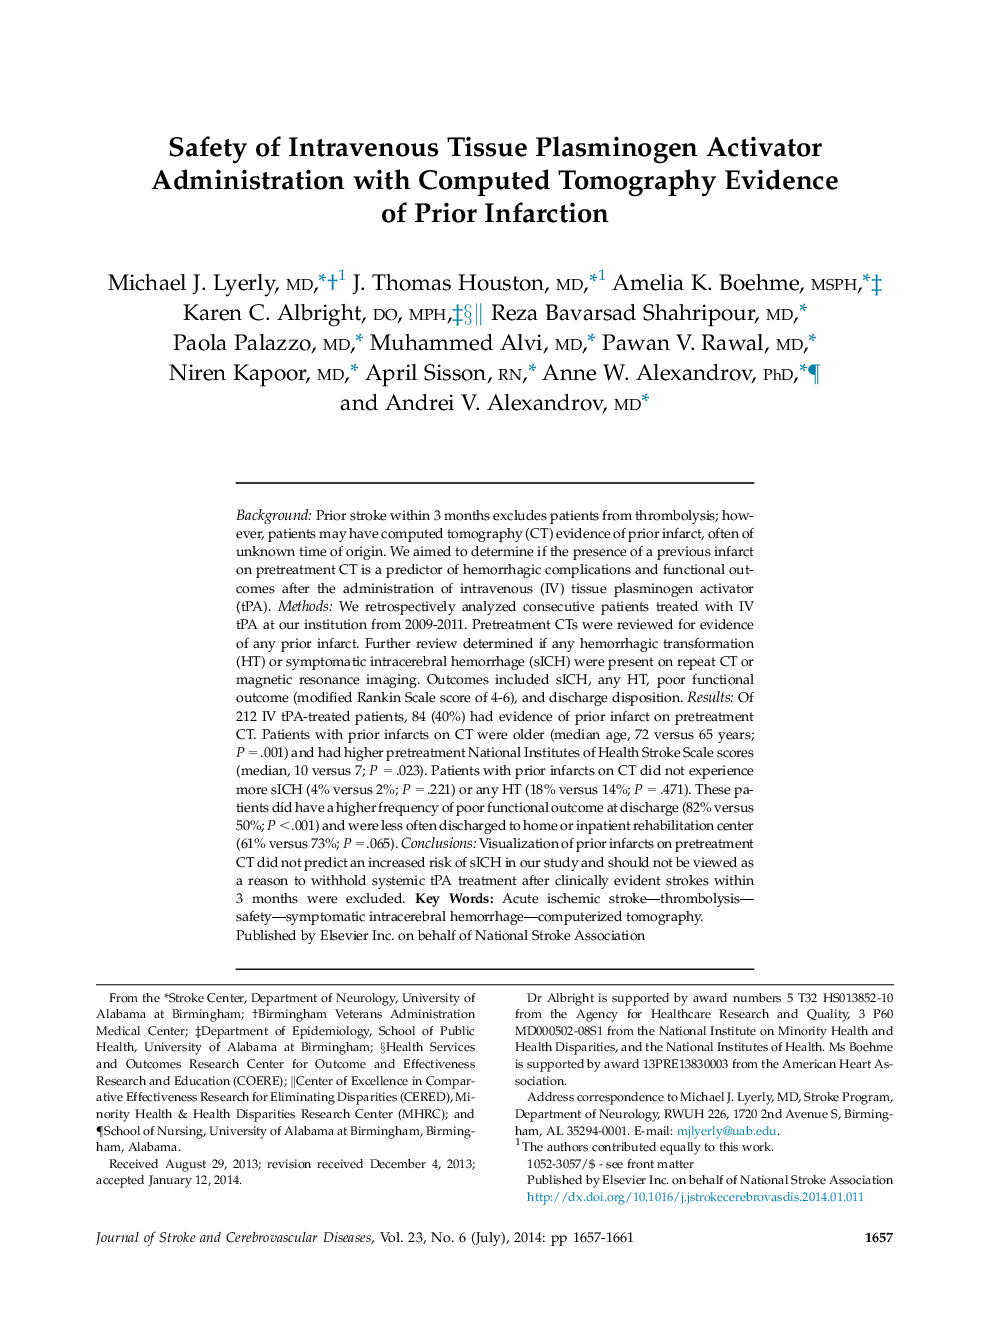 مقاله اصلی ایمنی عامل فعال سازی پلاسمینوژن بافت داخل وریدی با تست های کامپیوتری شواهدی از انفارکتوس قبل 